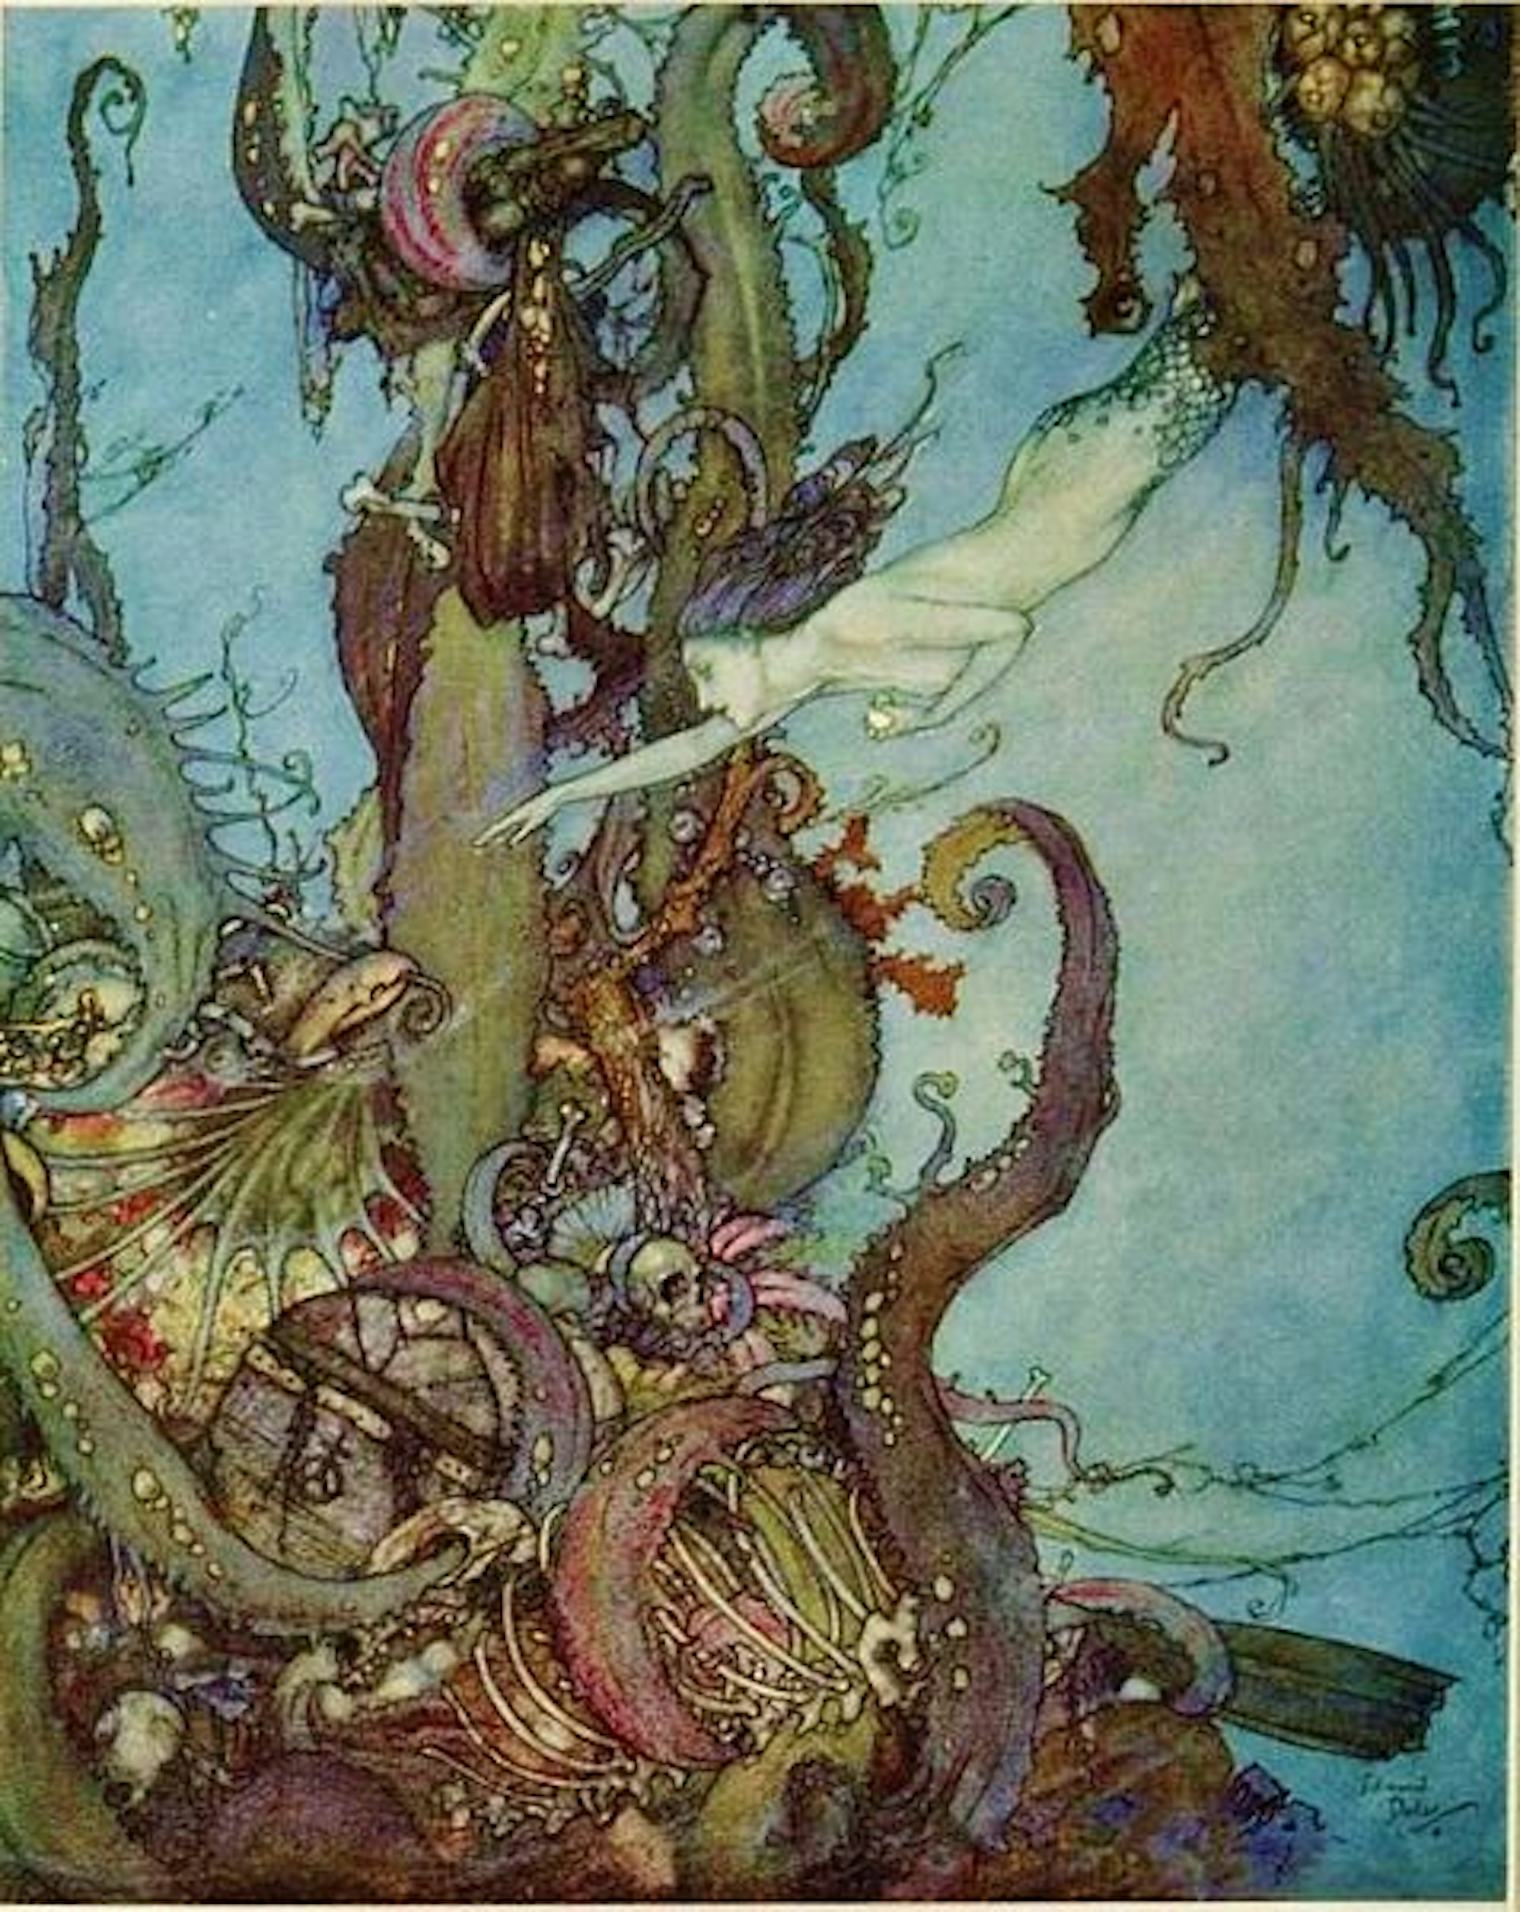 9-ways-the-original-little-mermaid-by-hans-christian-andersen-is